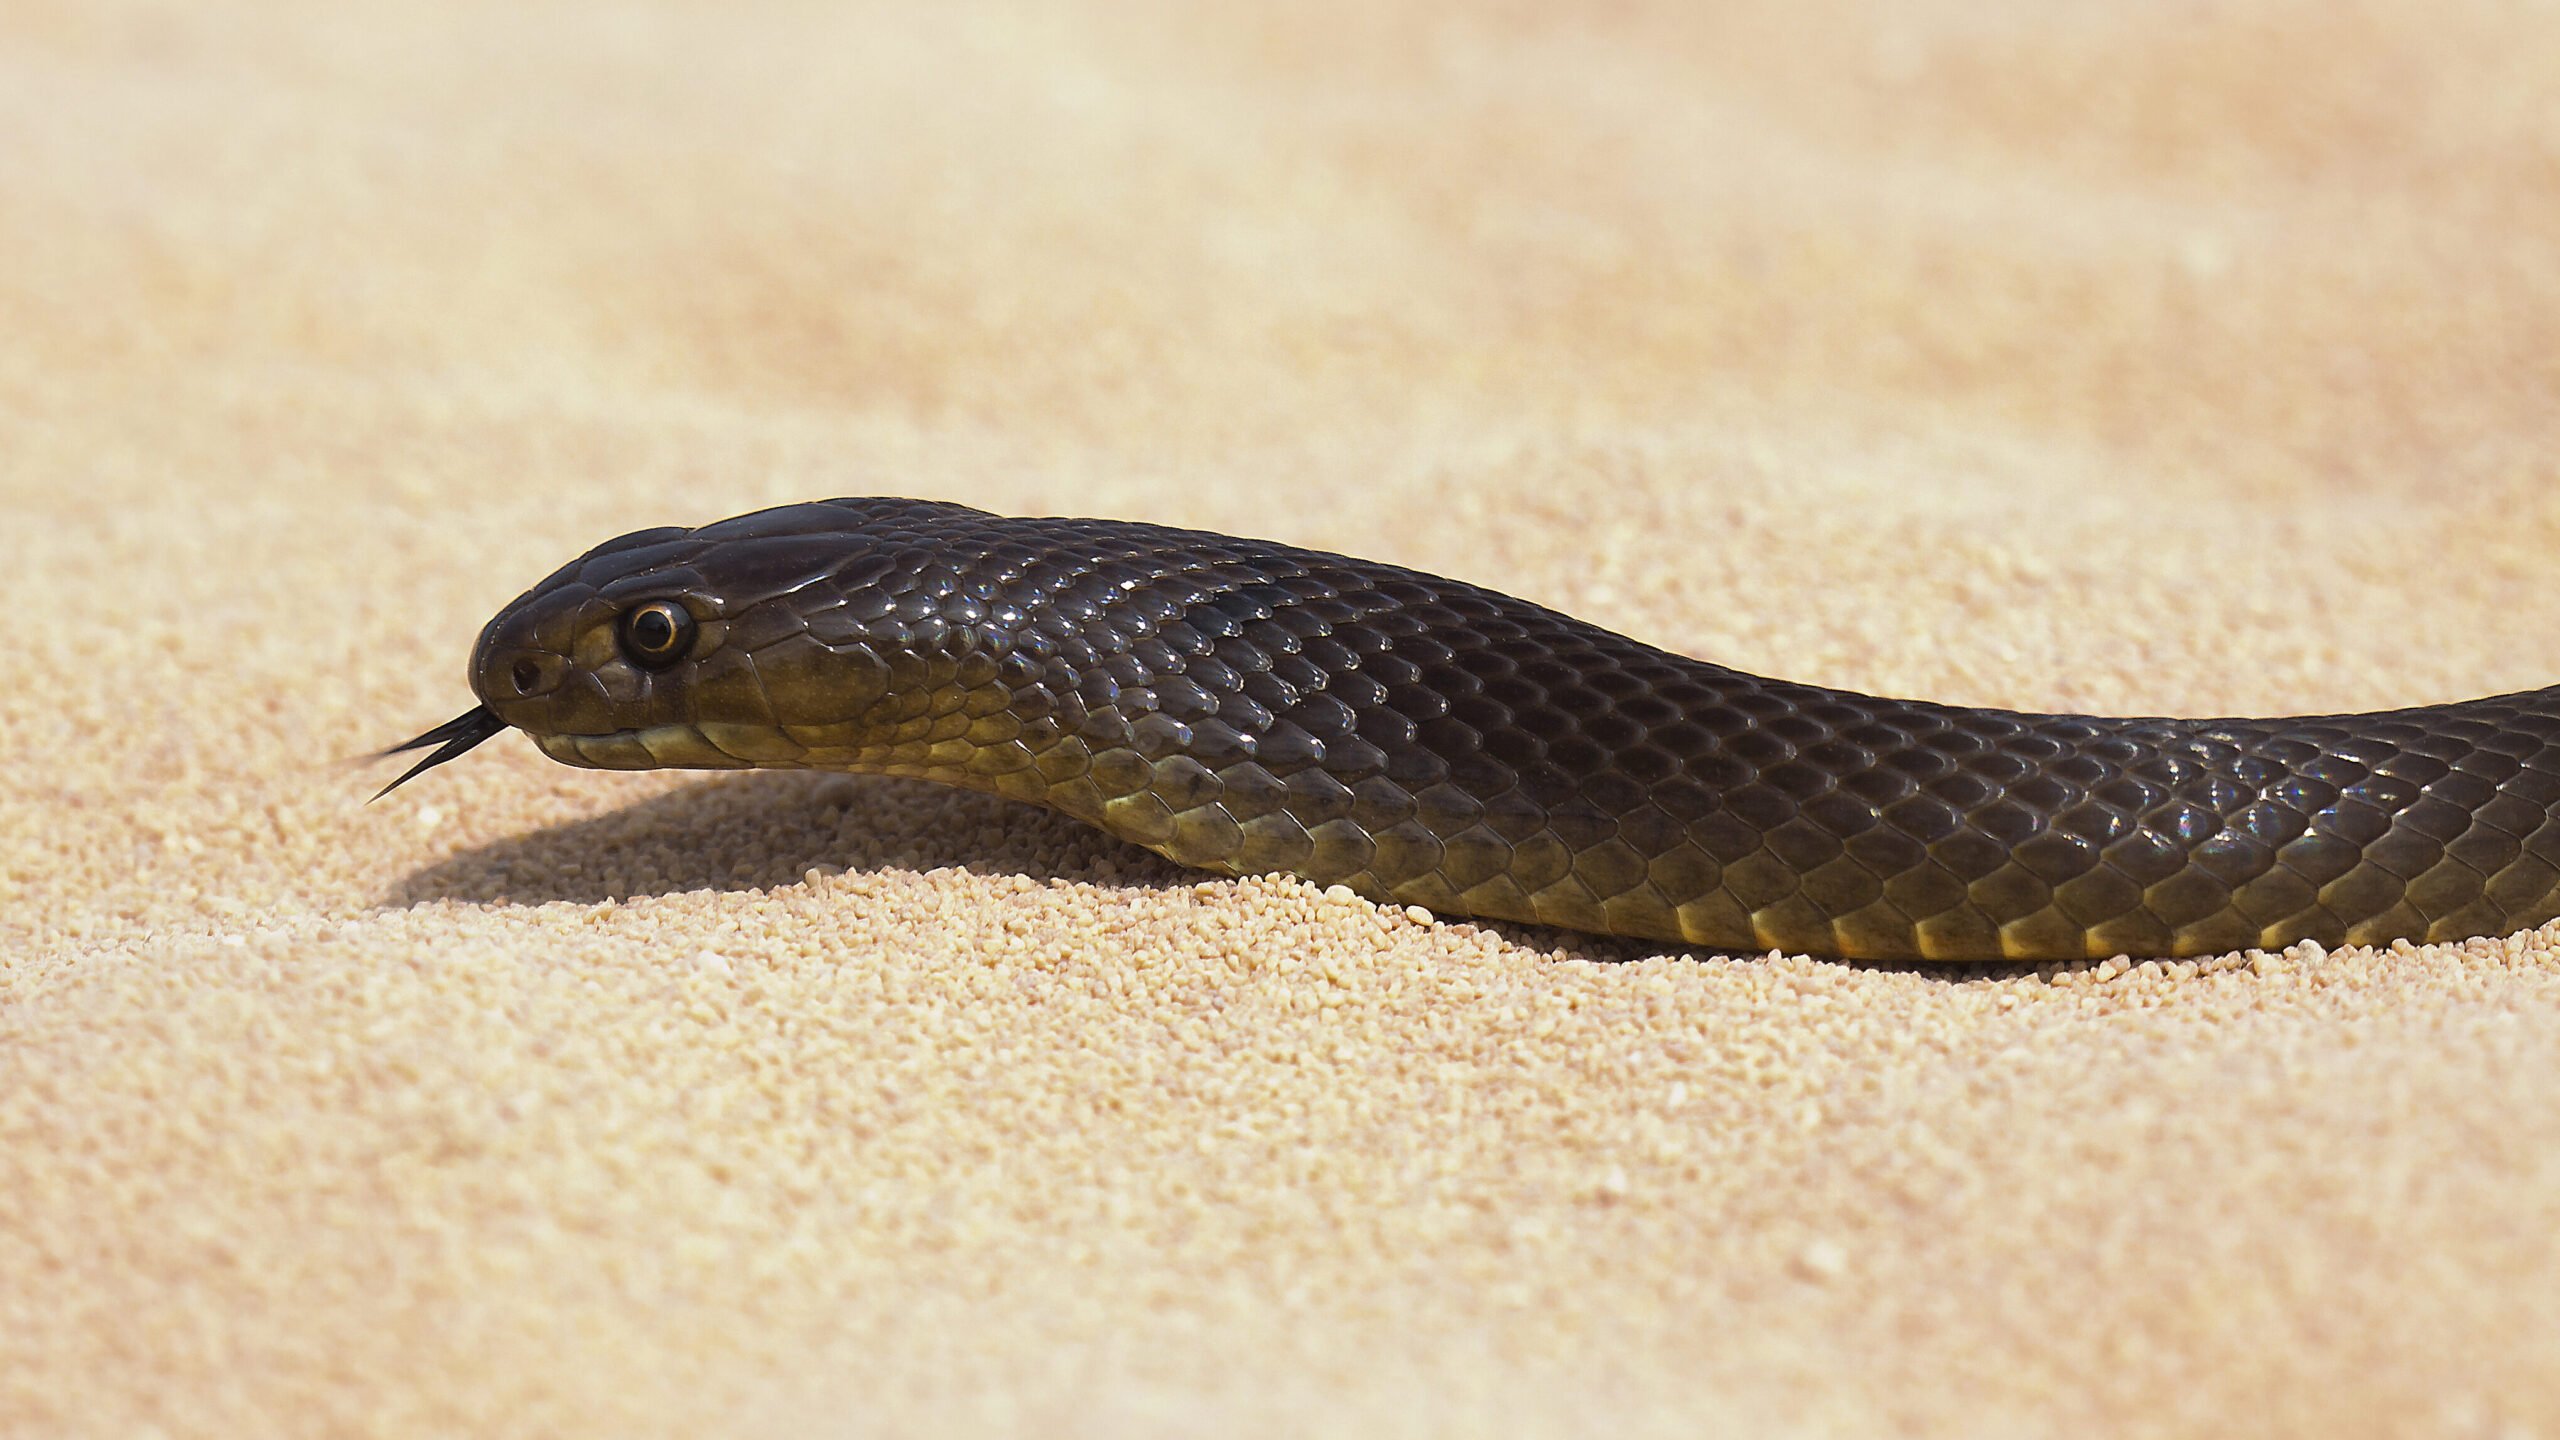 dangerous australian snakes